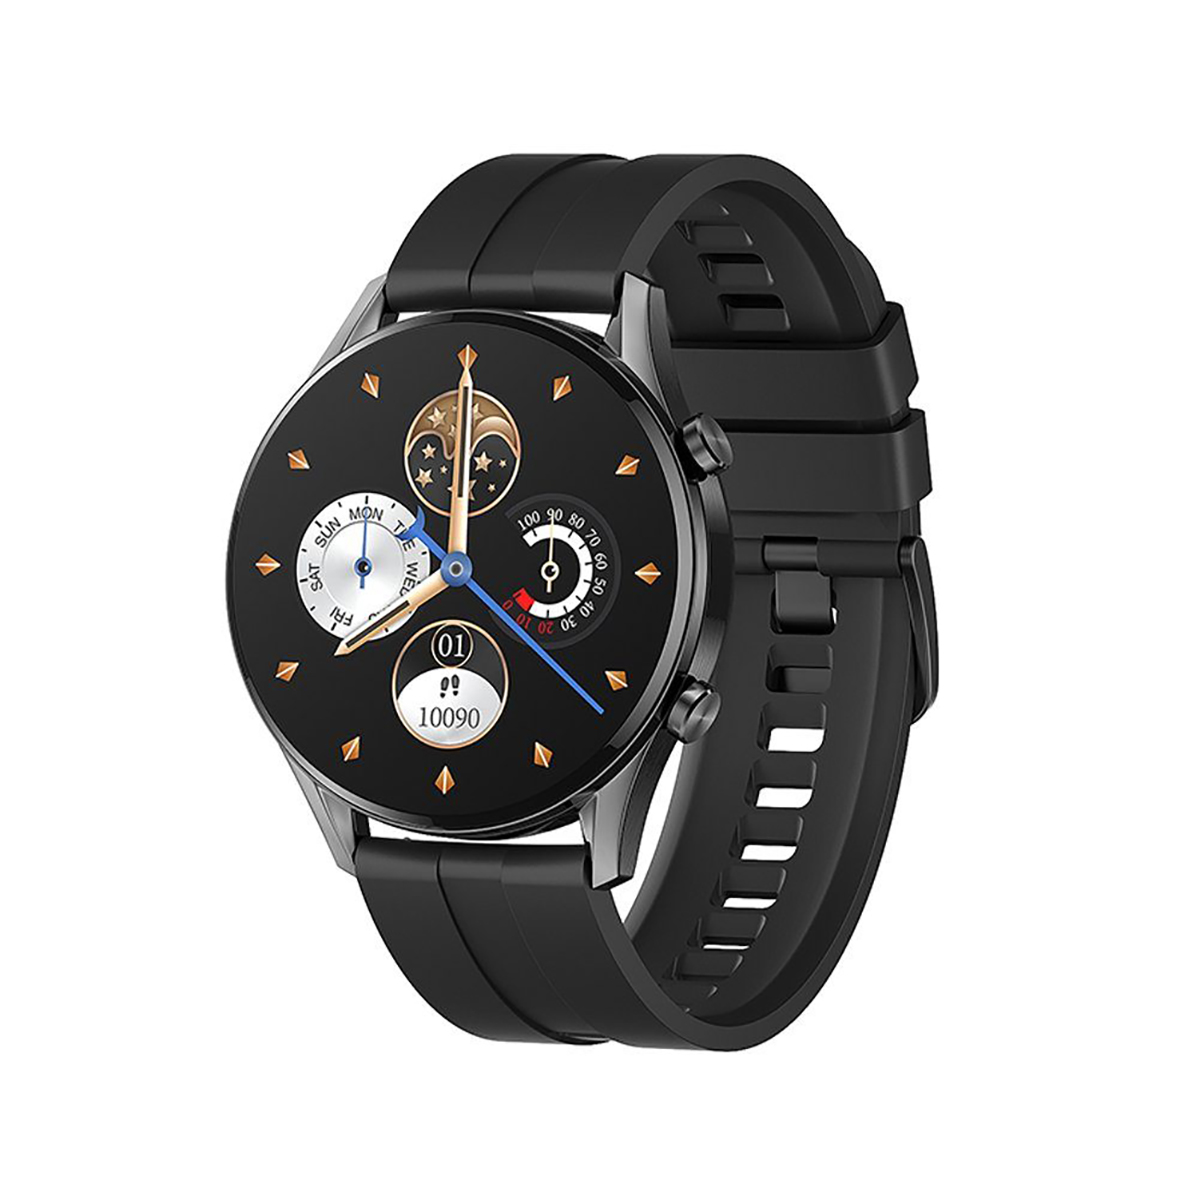 Weiches Bildschirm HD 13 Silikonband, Bluetooth-Uhr Sportmodi, 24hTracker Smartwatch, Smartwatch mit Smartwatch，Schwarze FINE Schwarz LIFE Armband, PRO